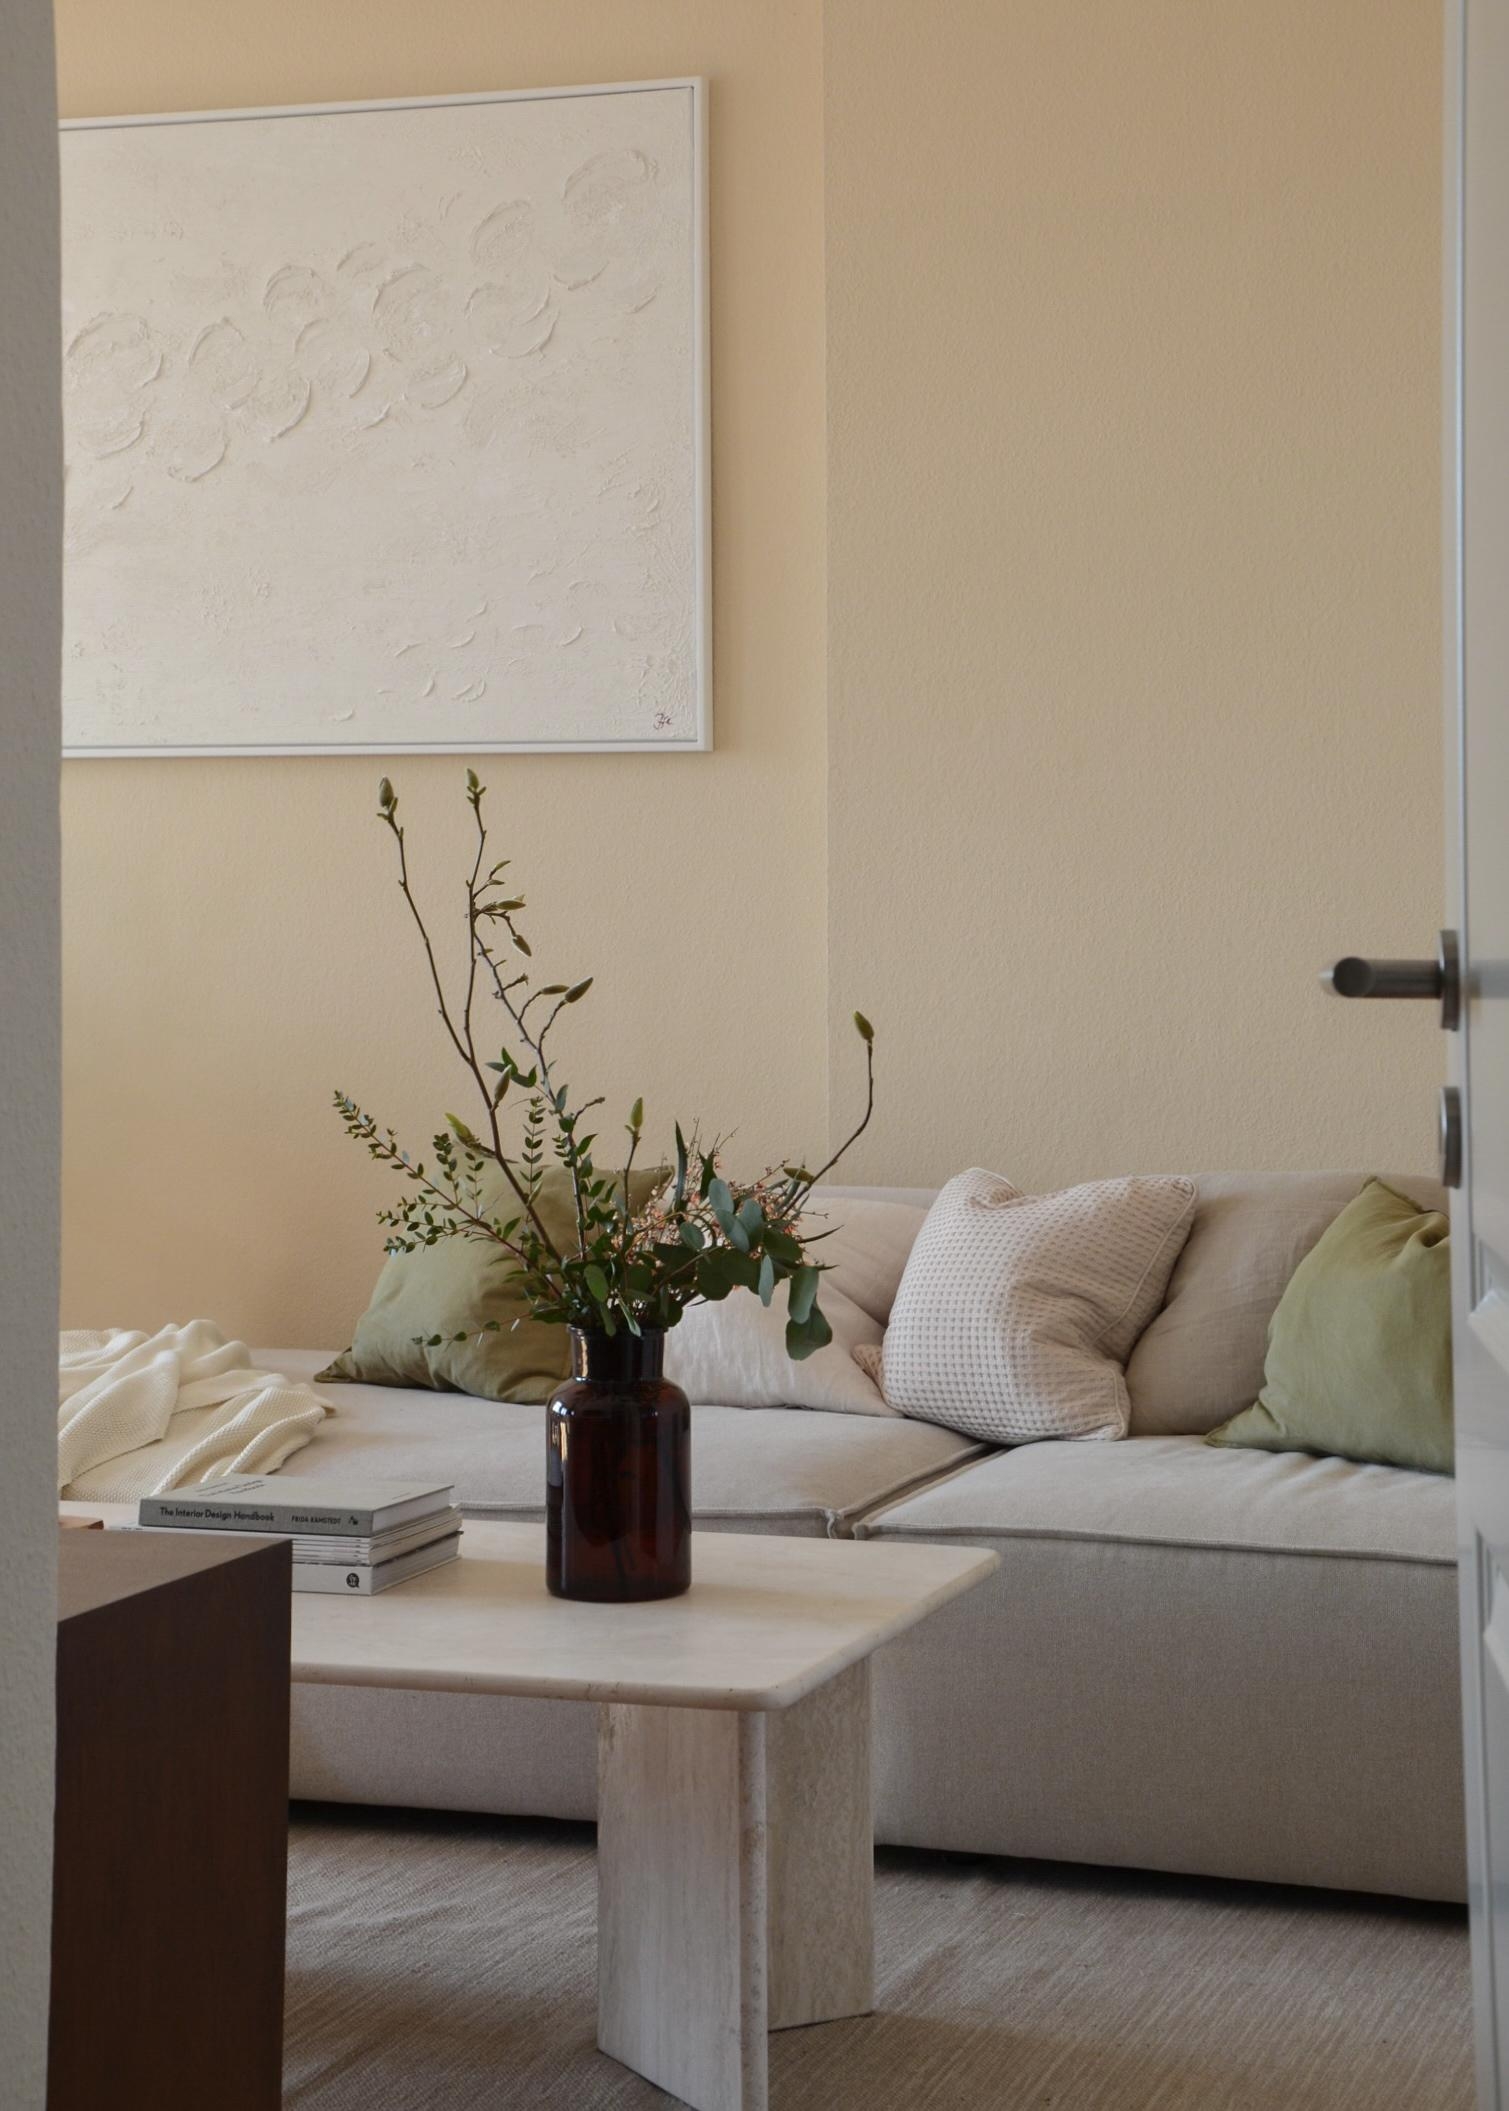 Ich freue mich drauf, wenn die Magnolie bald blüht 🌸 #wohnzimmer #magnolie #frühling #interiorinspo